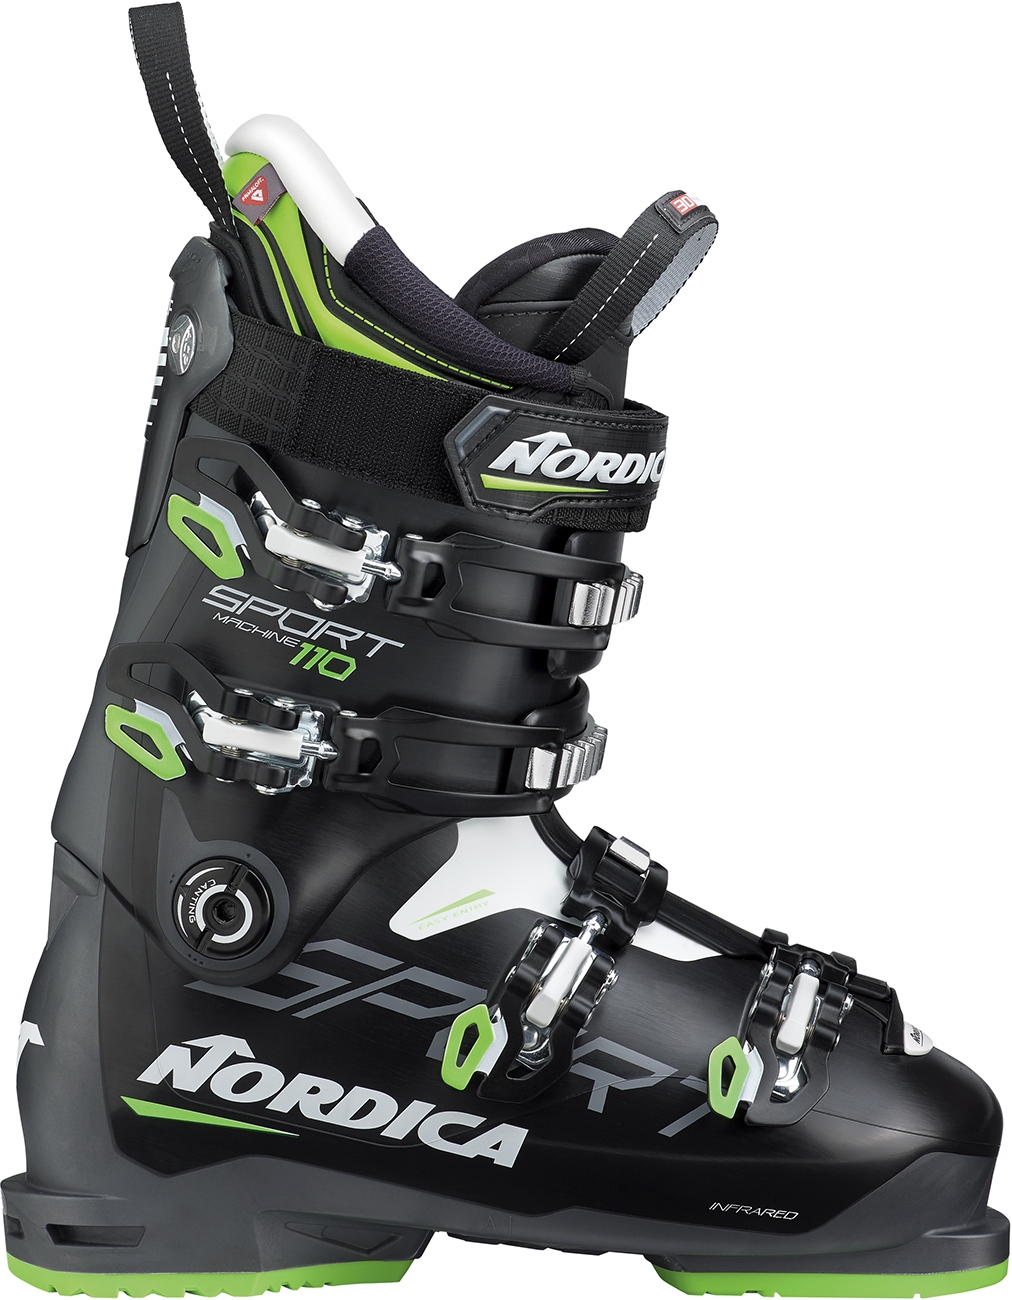 NORDICA Sportmachine 110 Skischuhe 2020/21